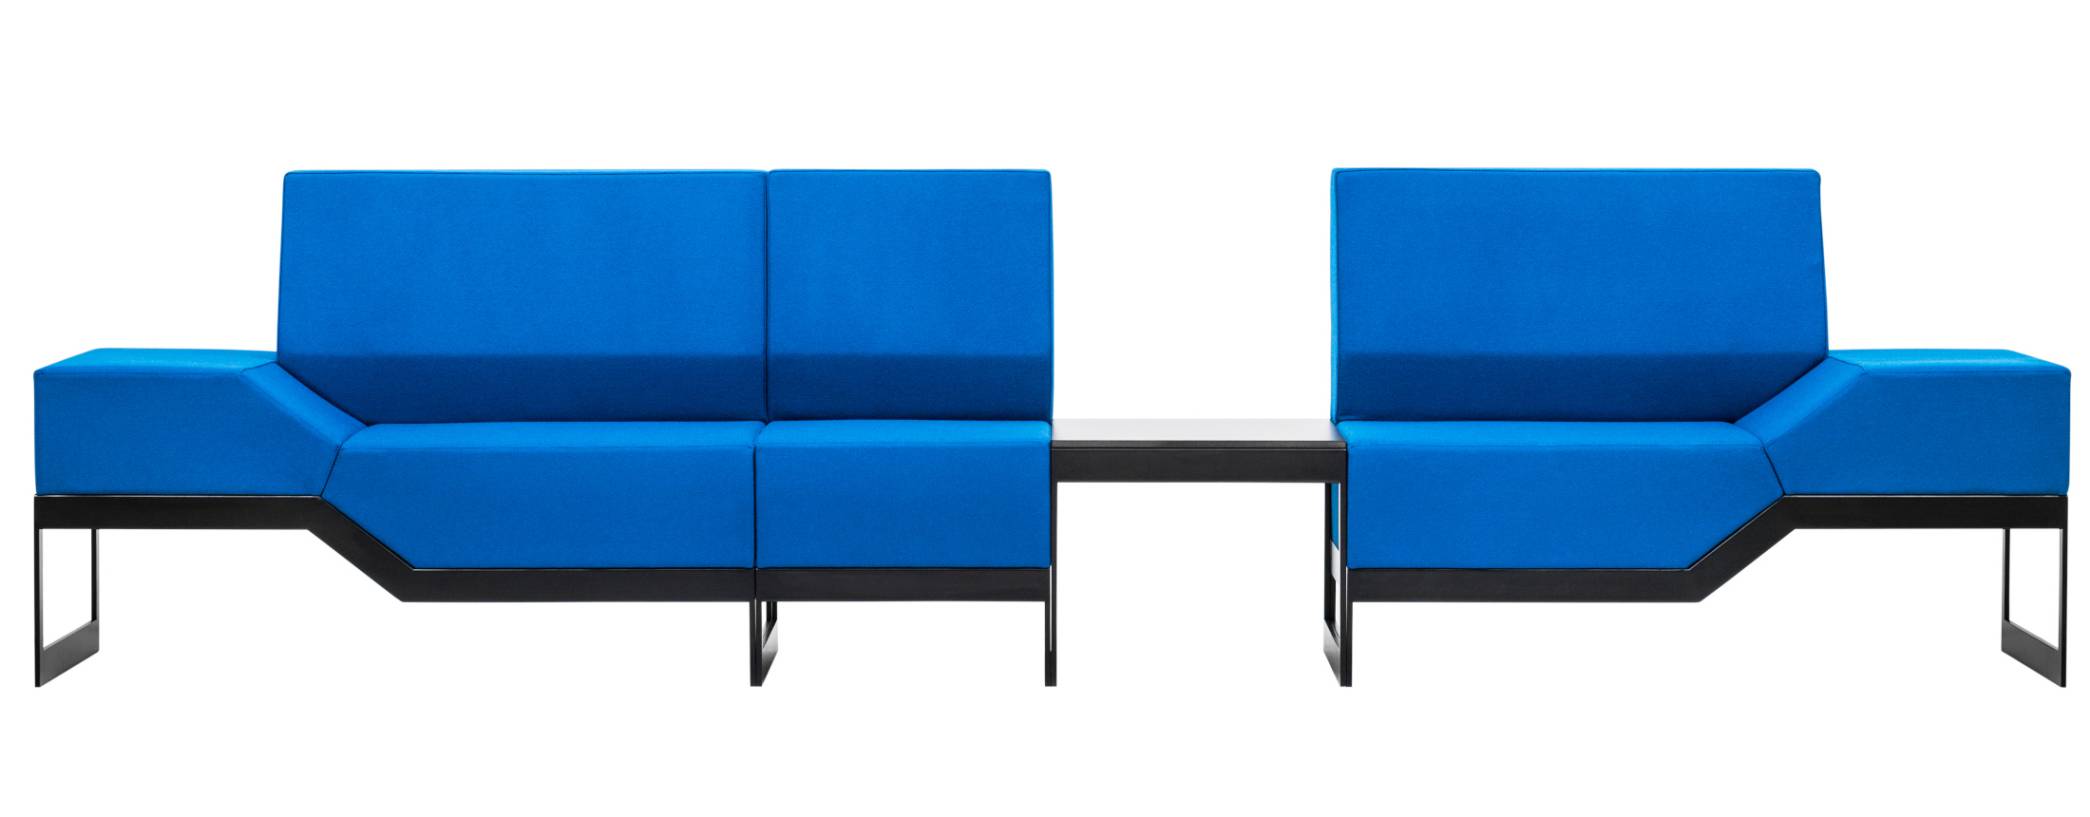 VANK Belong Loungesofa Design Möbel